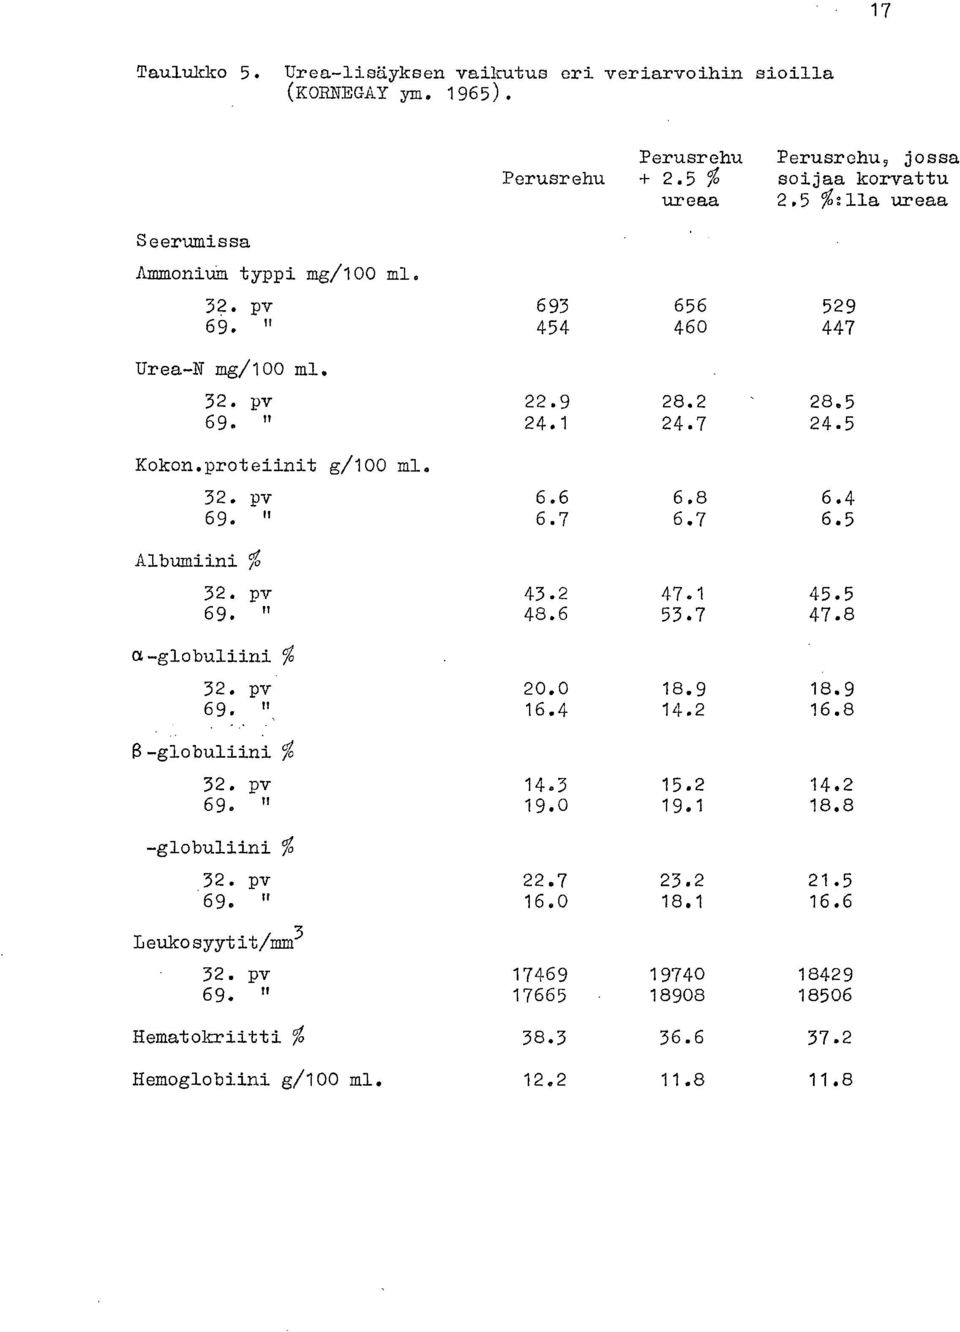 7 24.5 6.6 6.8 6.4 6.7 6.7 6.5 Albumiini /0 32. pv 69. a-globuliini % 32. pv 69. ", 32. pv 69. " % -globuliini % 32. pv 69. " 11eukosyytit/mm3 32. pv 69. " Hematokriitti % Hemoglobiini g/100 ml.